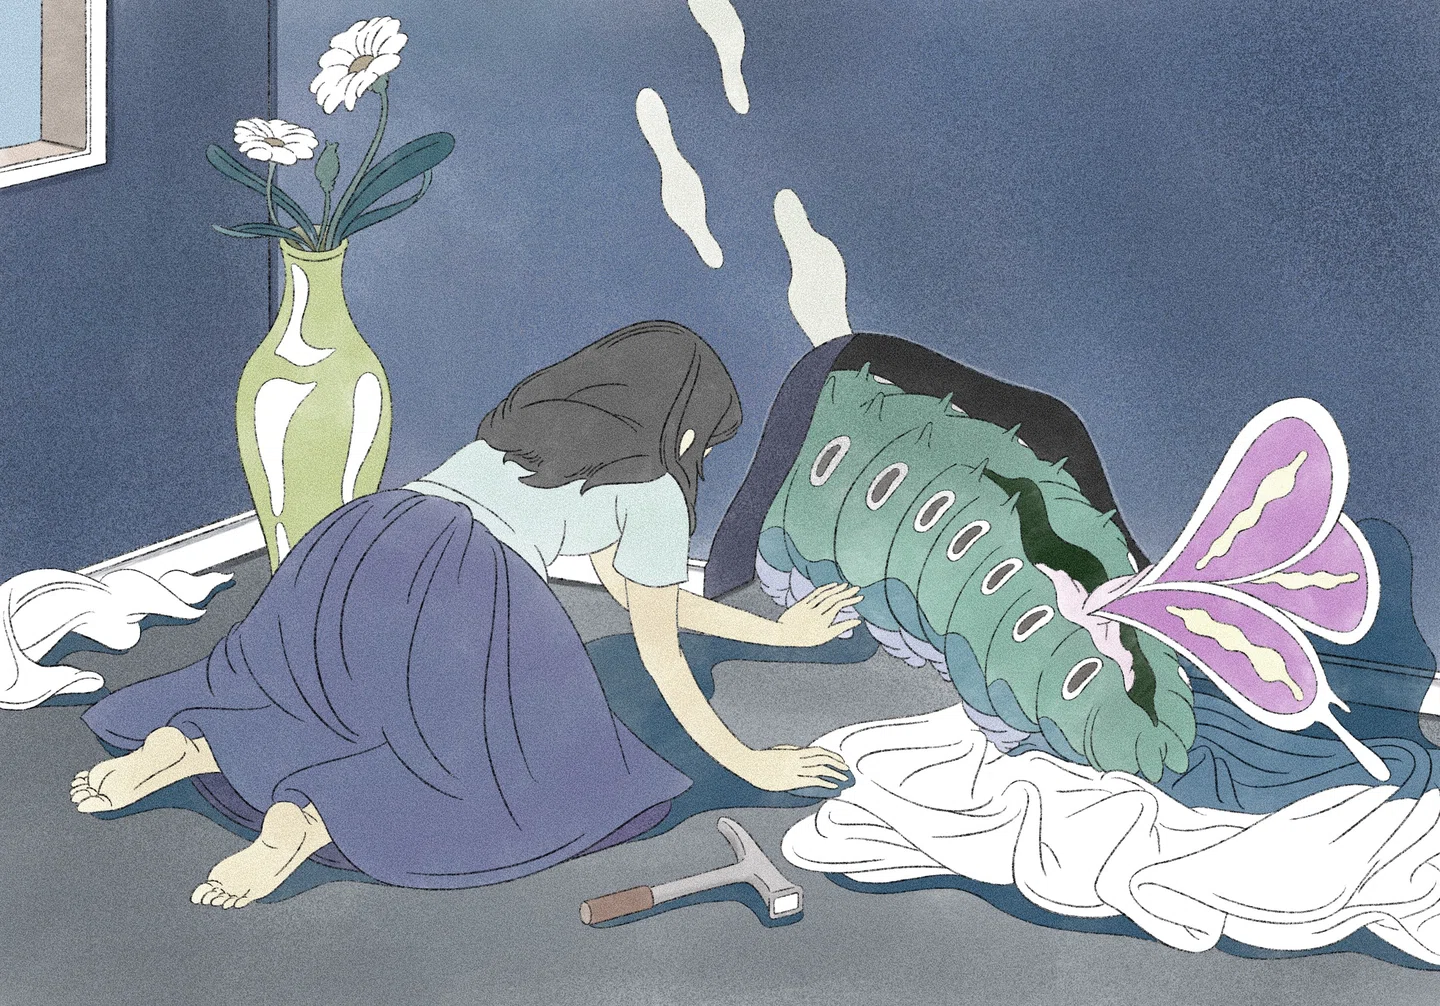 “Único, estranho e esquisito”, as ilustrações de Takaya Katsuragawa estão repletas de momentos inesperados